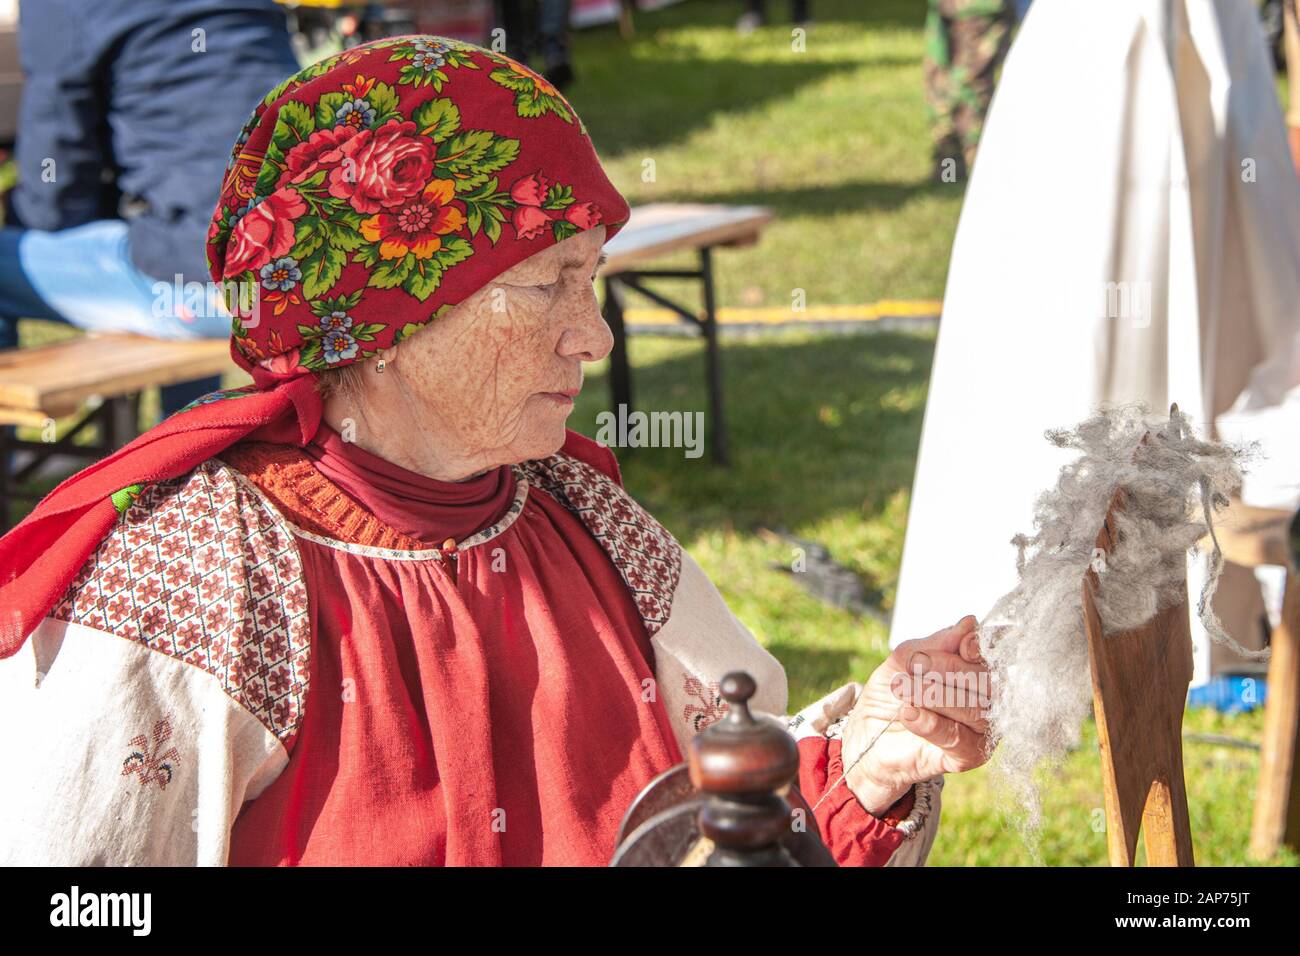 Izmailovsky Park, Mosca, Russia - 1 ottobre 2016: I discendenti di Cossack alla fiera e Cossack riunione. Una donna gira i fili su una vecchia filatura Foto Stock